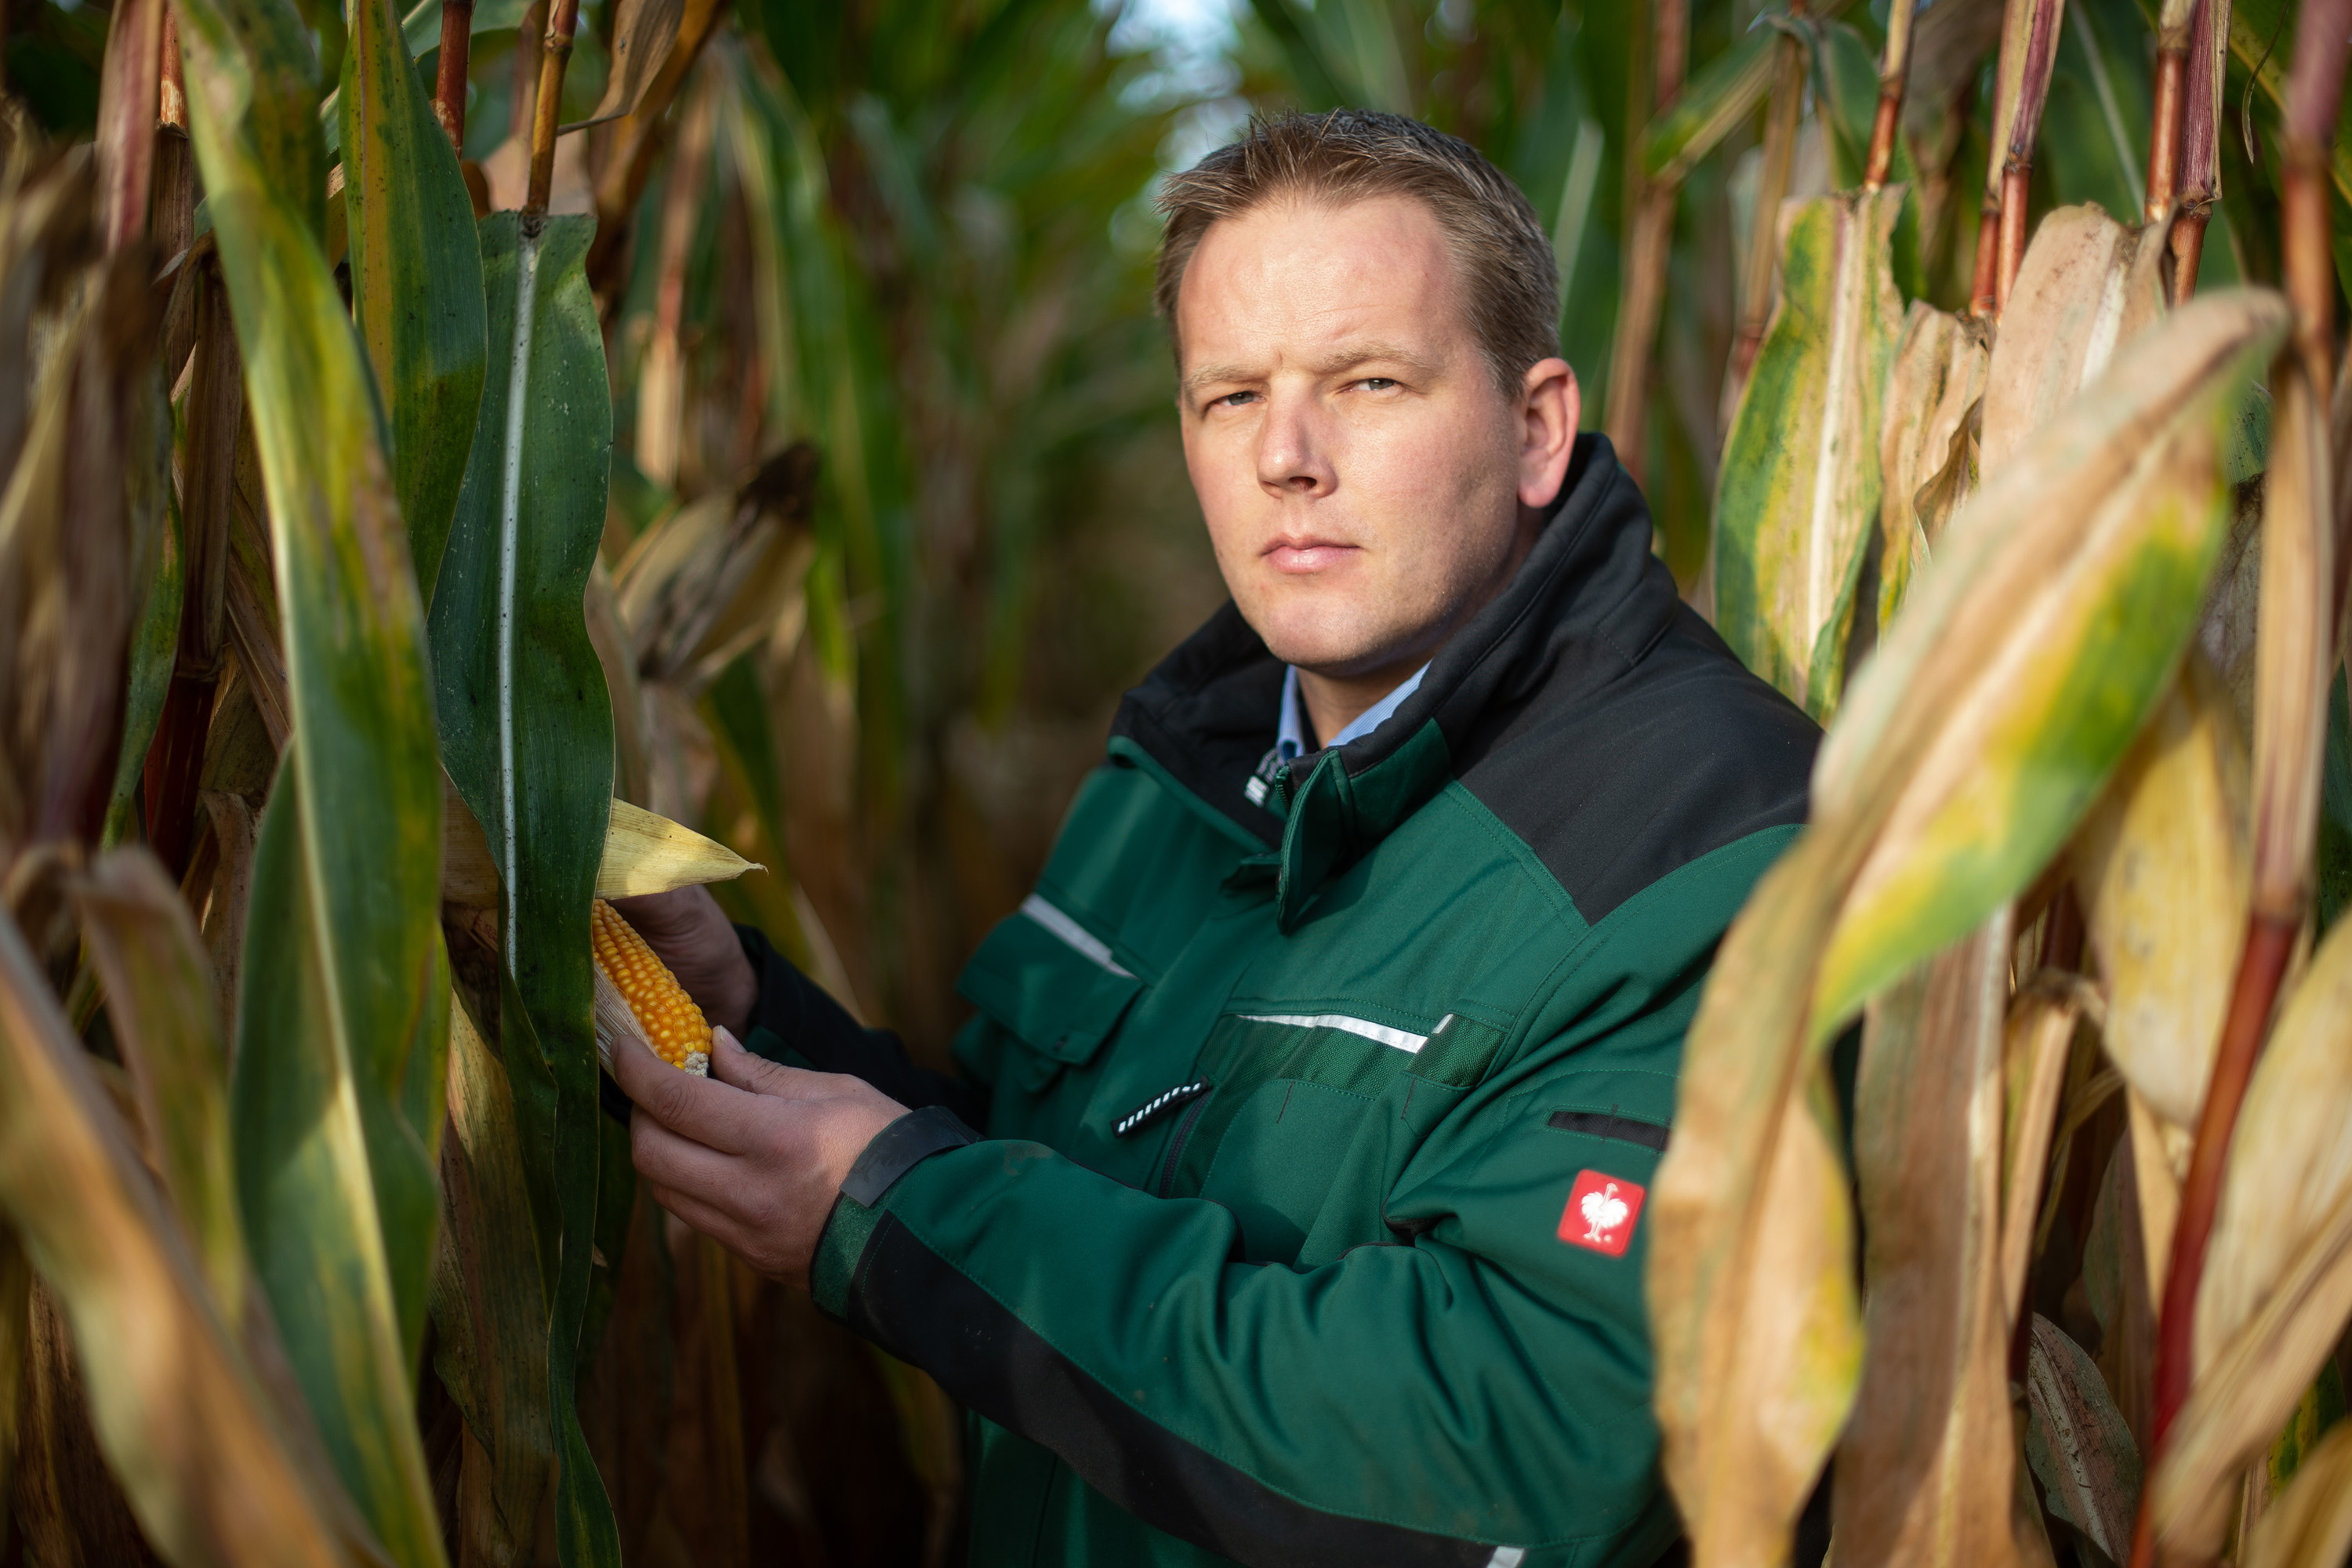 Landwirt Matthias Ebmeyer überprüft die Qualität der Mais-Pflanze.